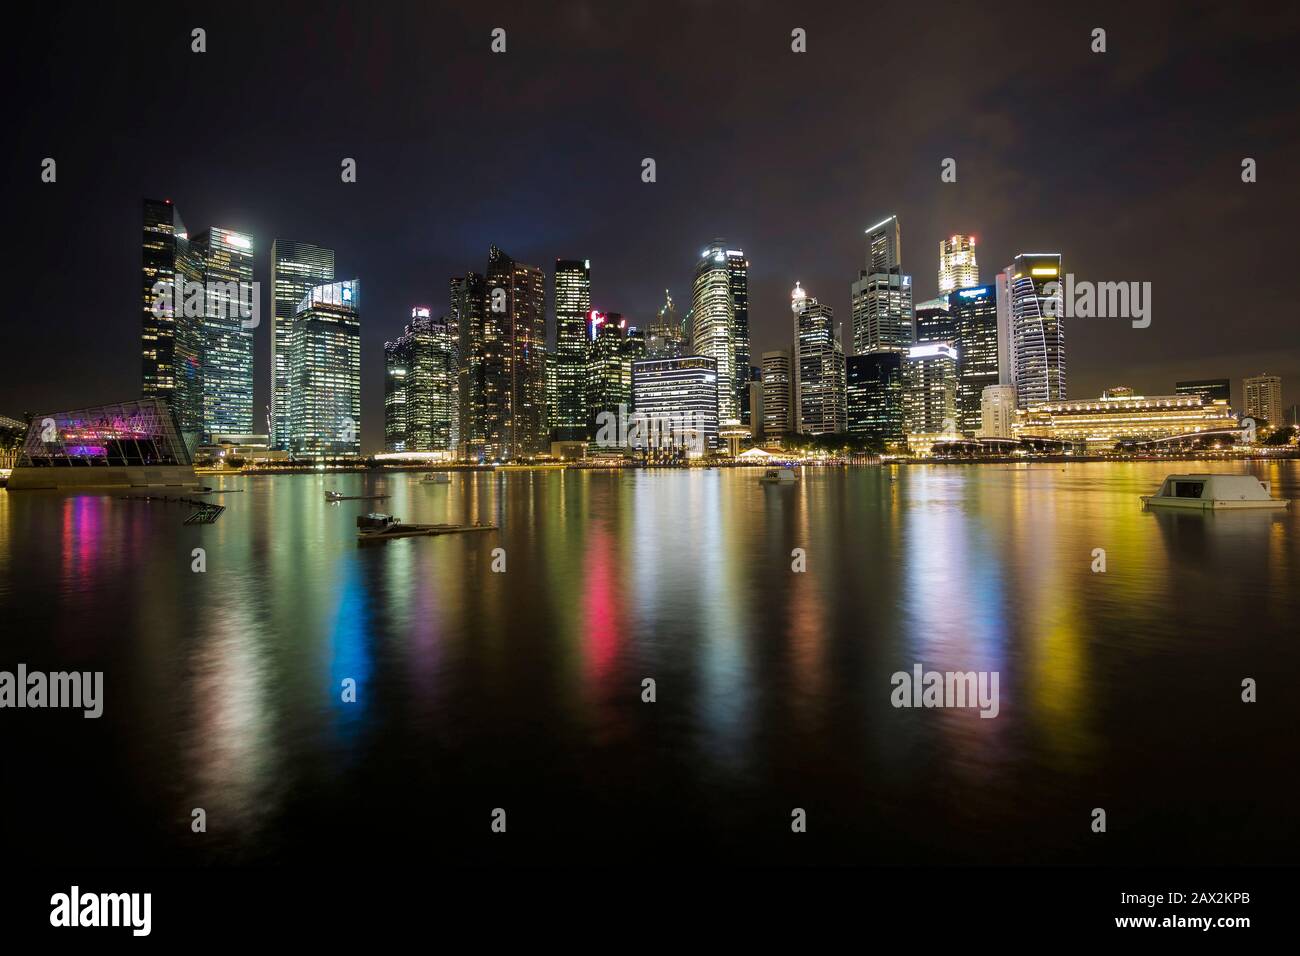 Singapore city skyline at night. Stock Photo